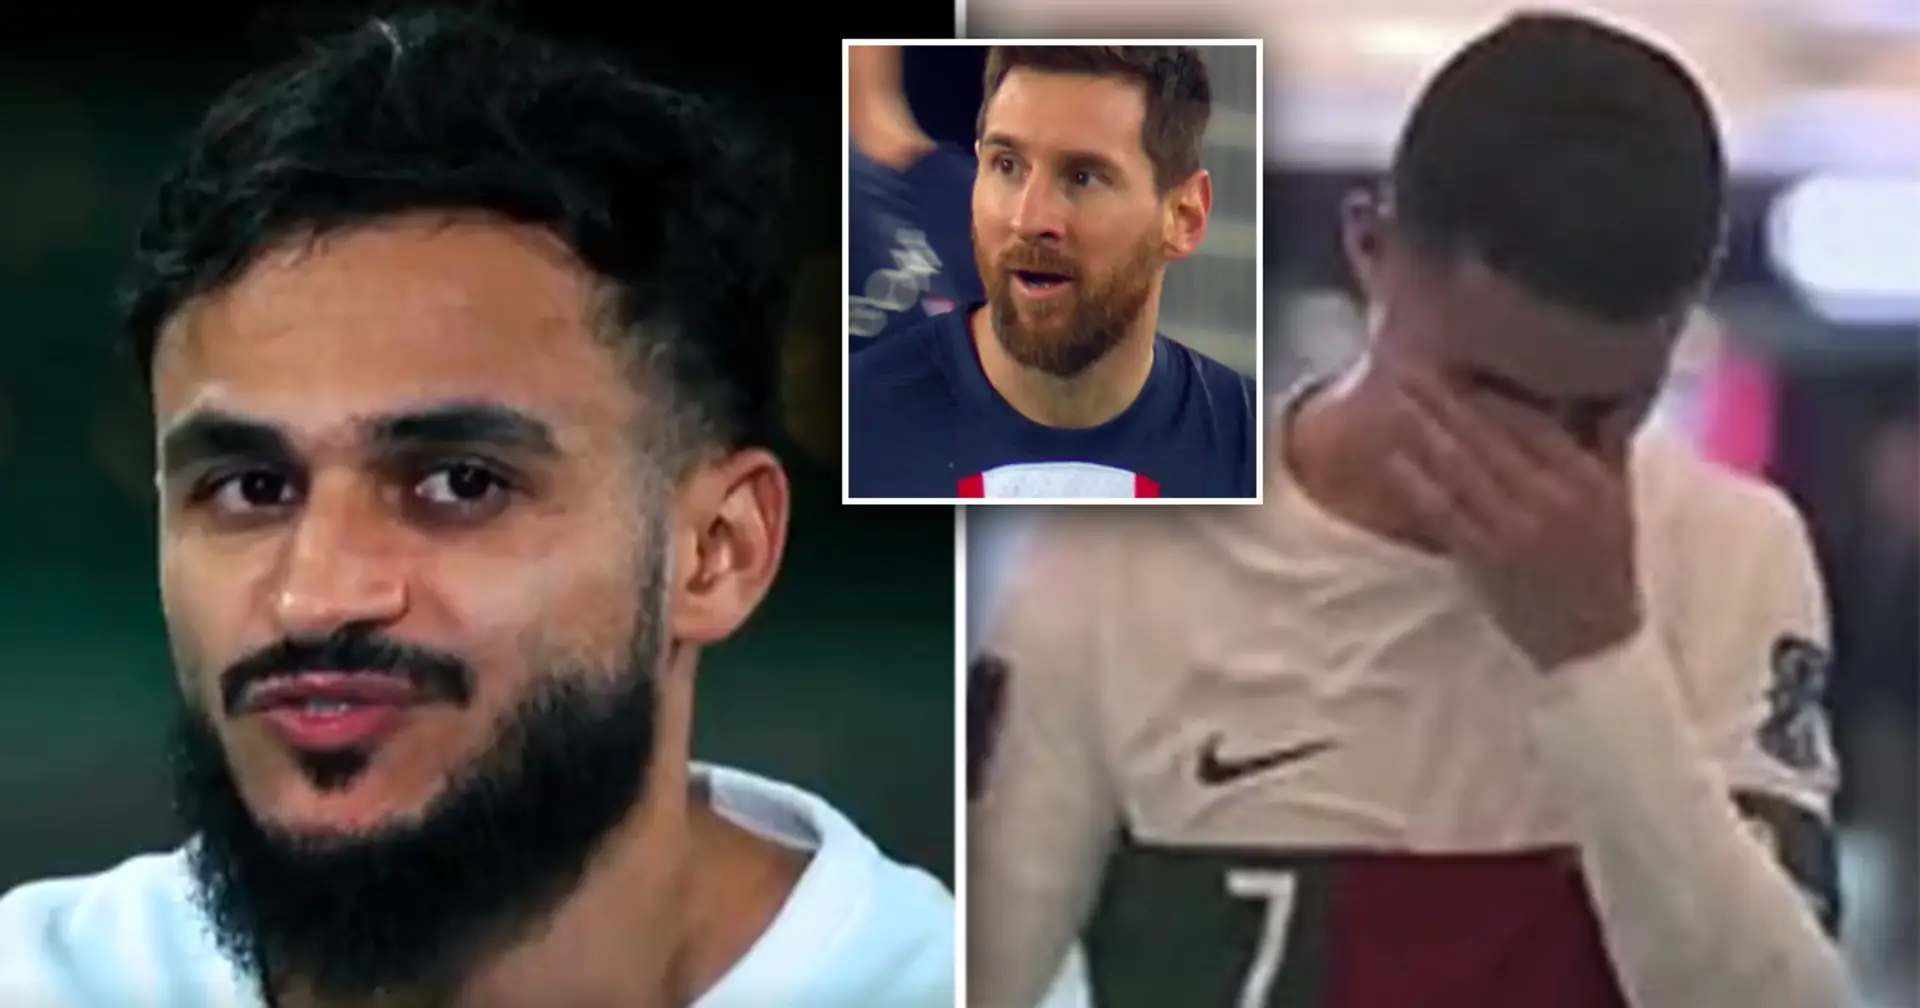 "J'ai aimé voir Ronaldo pleurer. J'aime plus Messi et j'aimerais jouer pour le Barça'' : la star marocaine Boufal